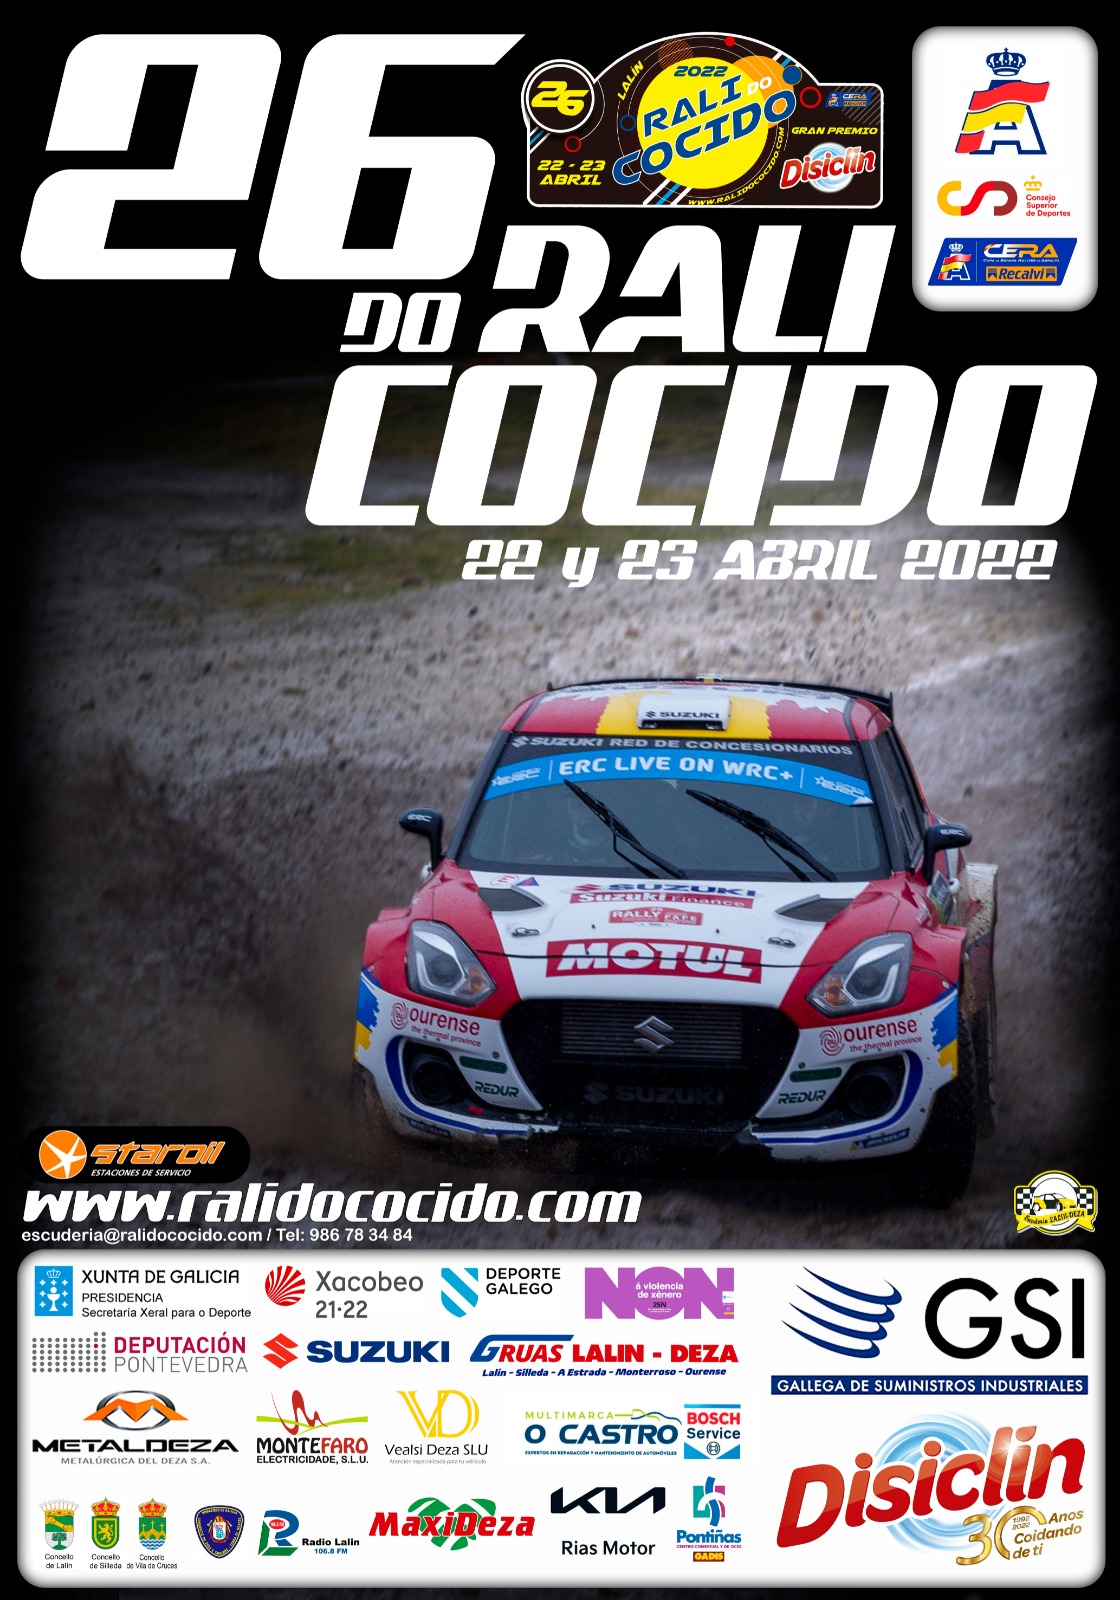 CERA Recalvi: Copa de España de Rallyes de Asfalto 2022 Cartel-26-Rali-do-Cocido